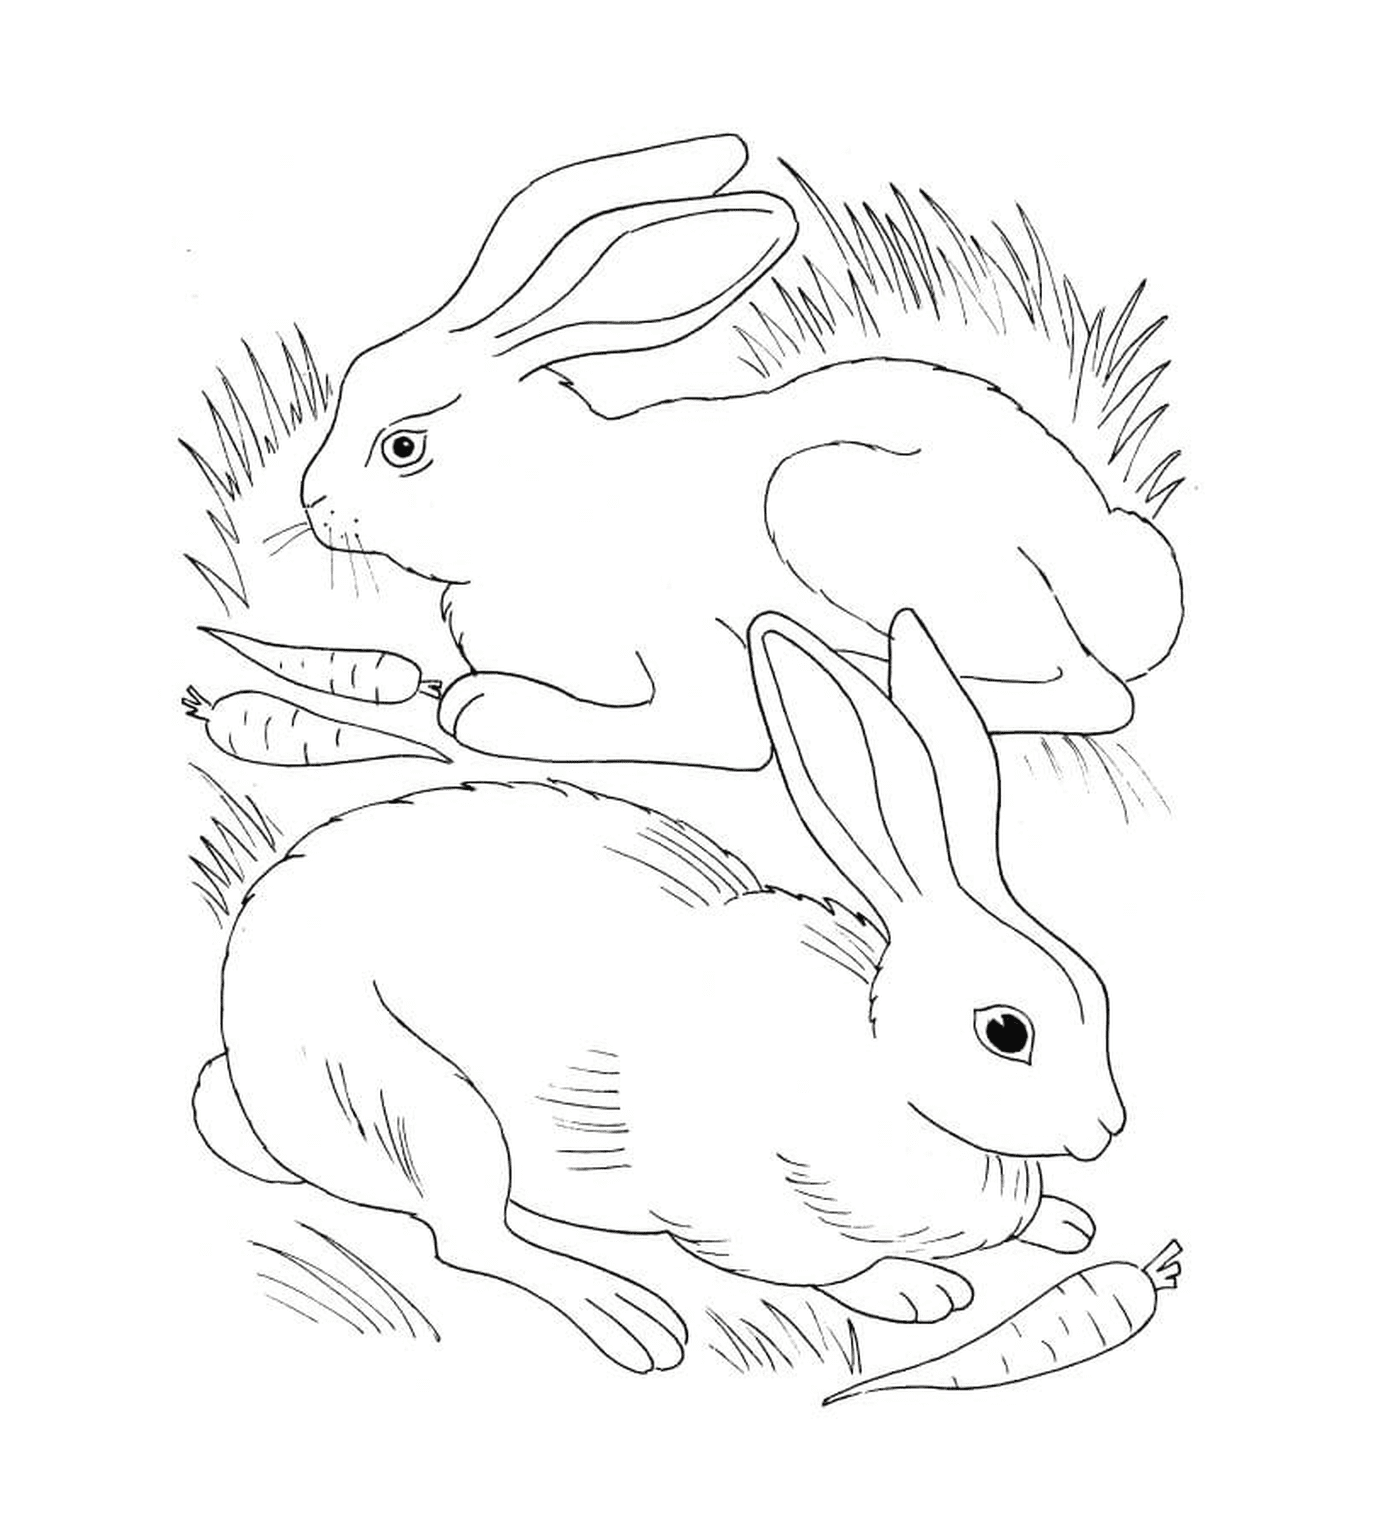  Кролик и кролик едят морковь 